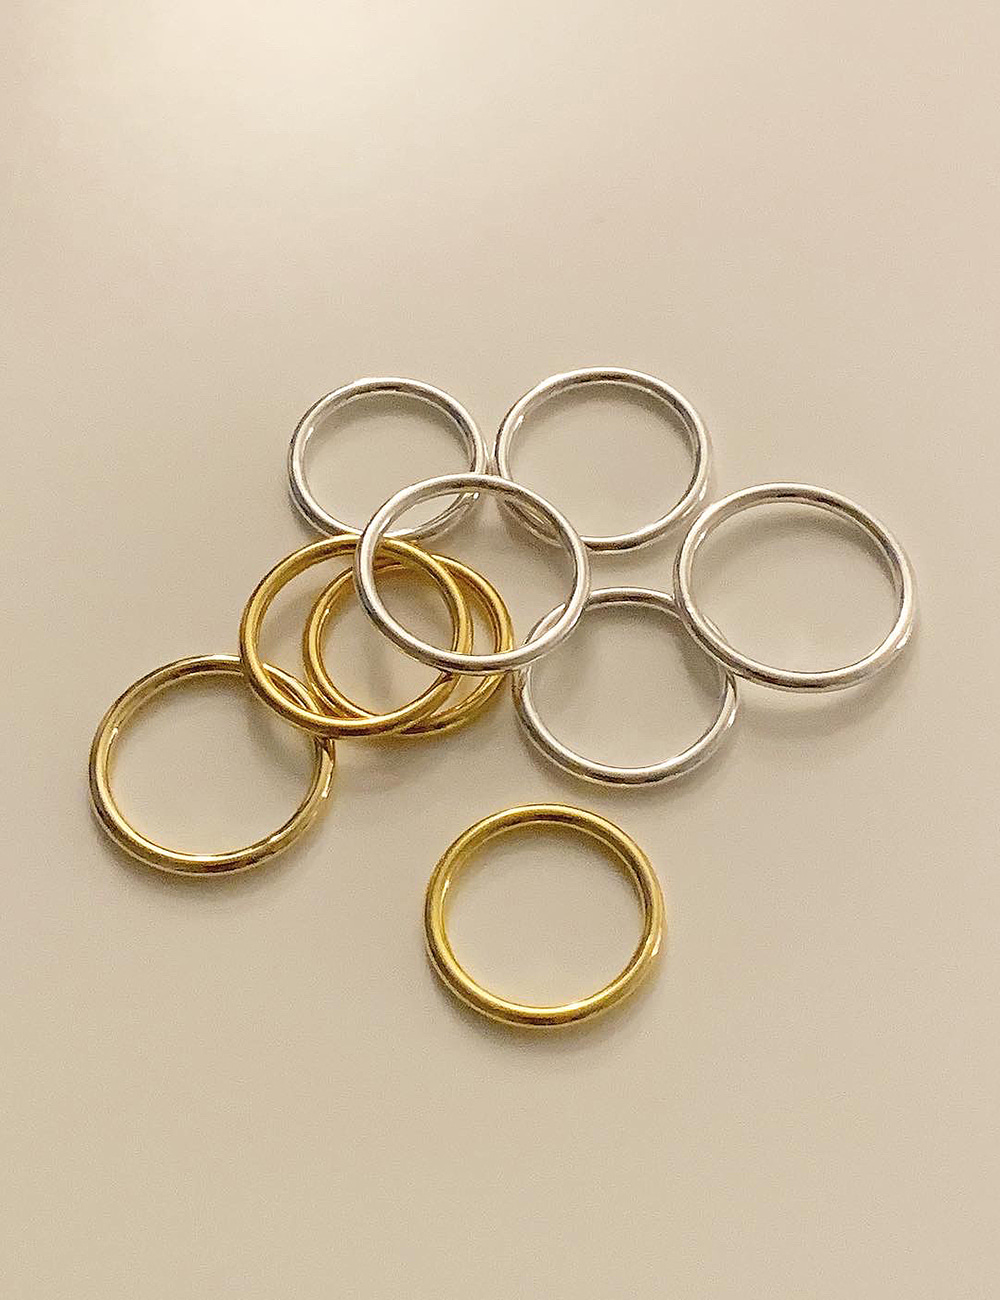 *주문폭주! (silver 92.5) Daily ring / 2mm